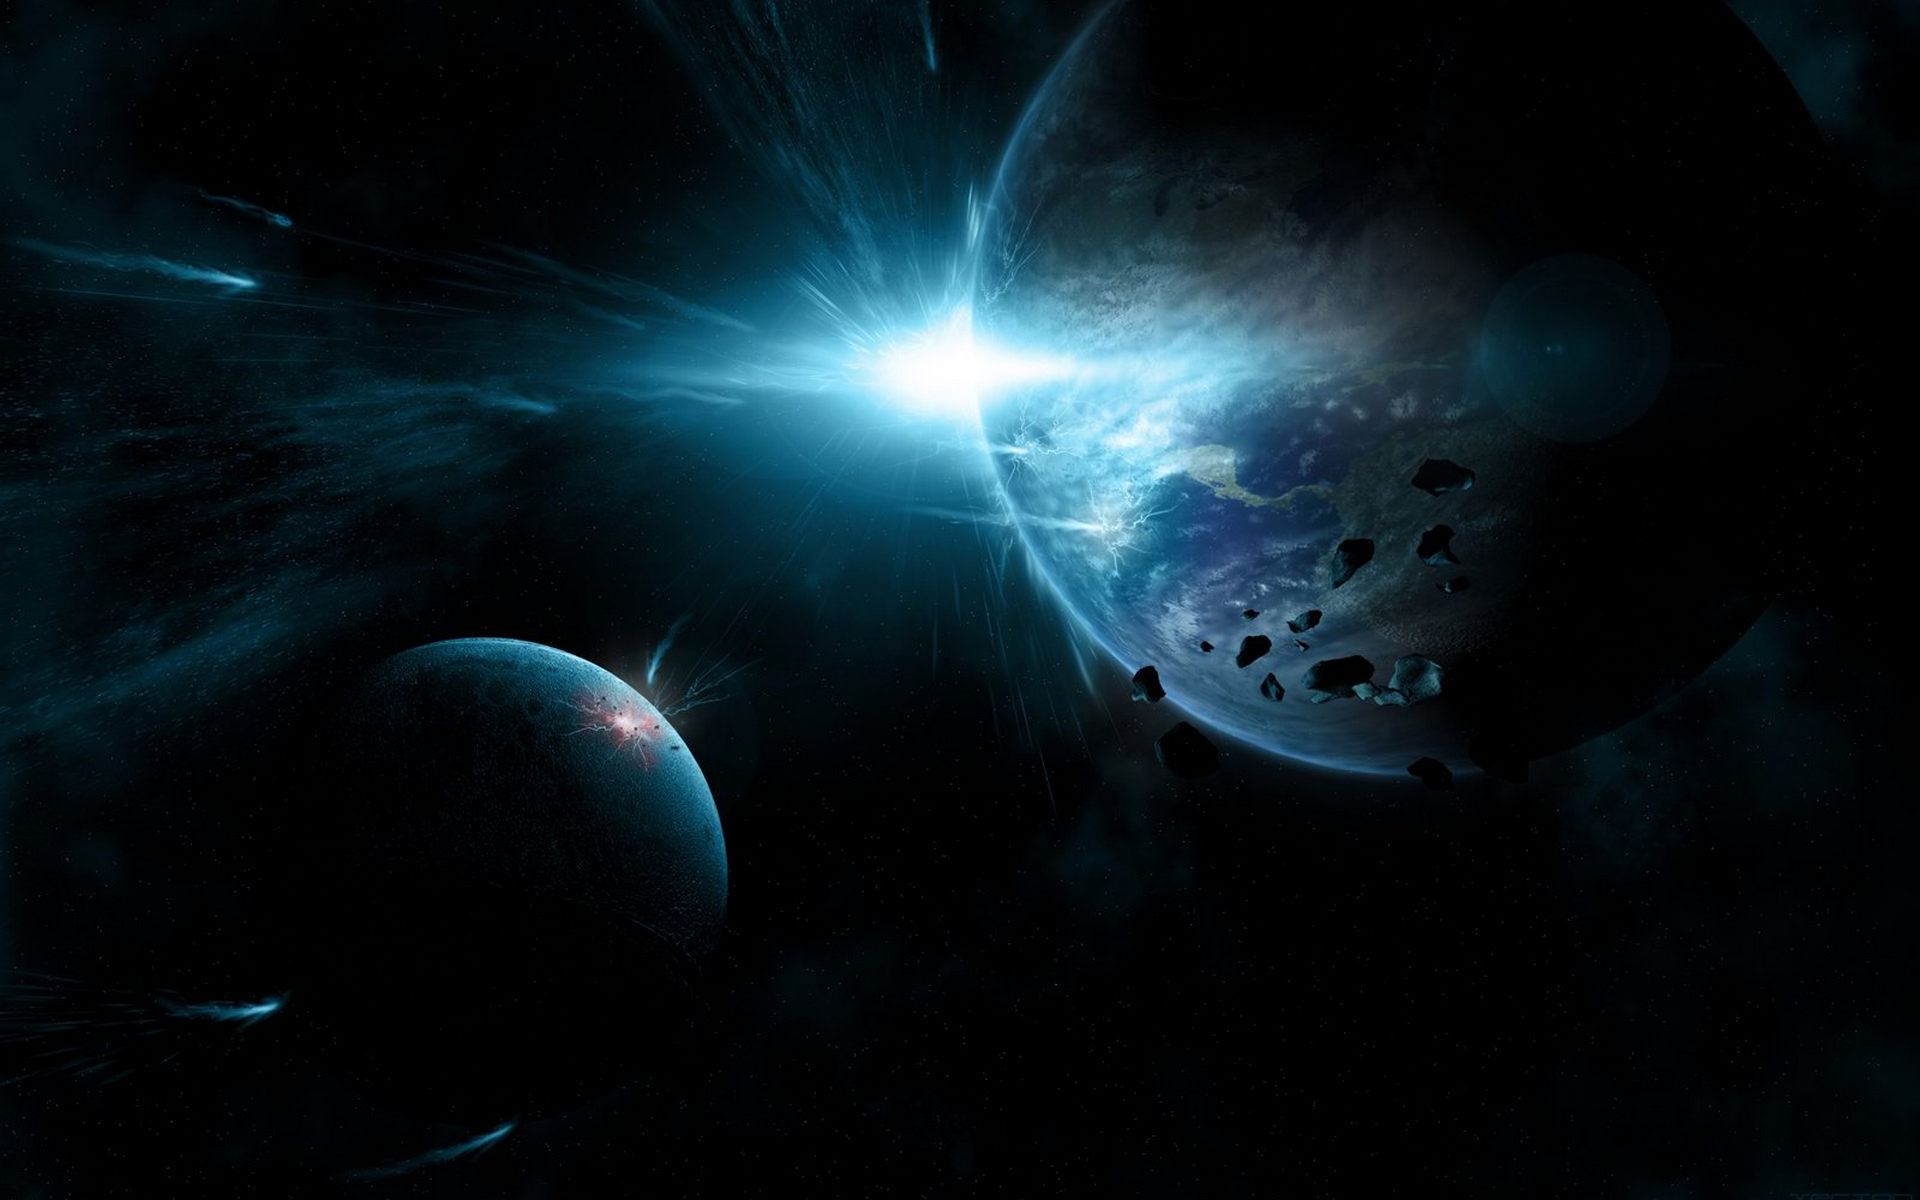 Обои космос метеорит планета картинки на рабочий стол на тему Космос - скачать бесплатно